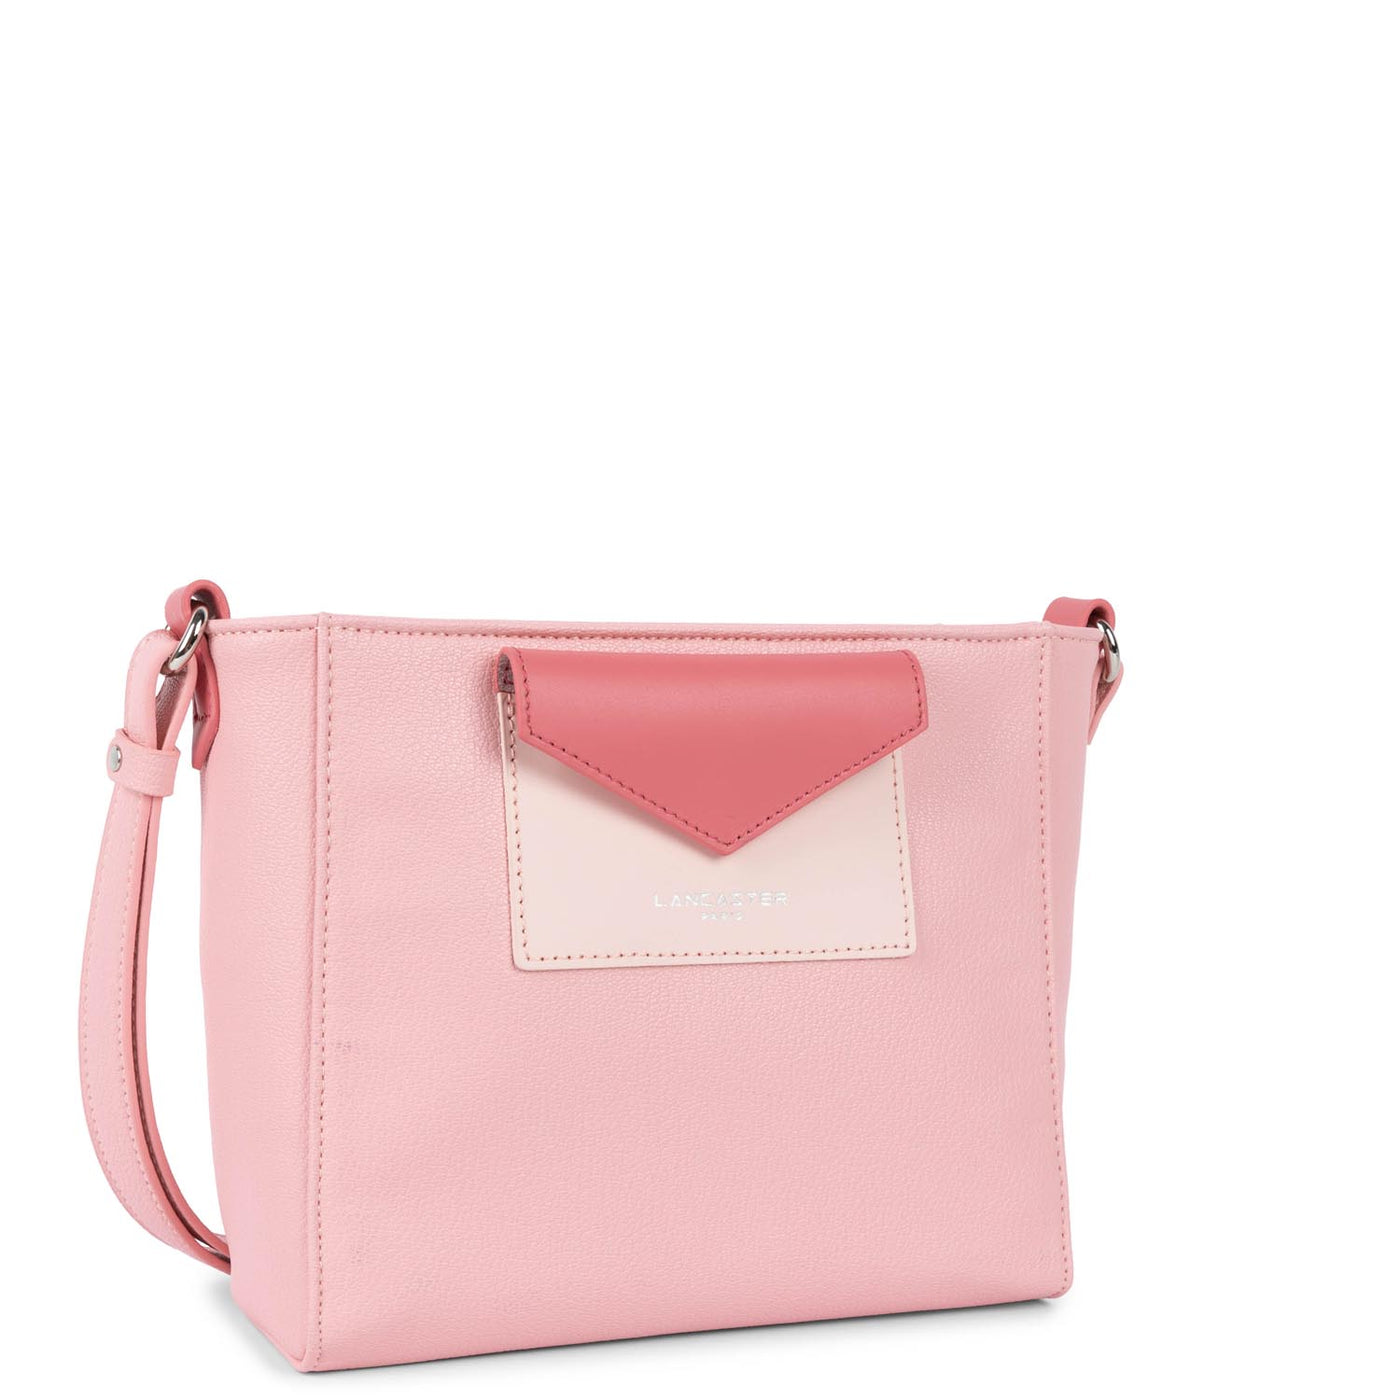 crossbody bag - maya #couleur_rose-rose-clair-blush